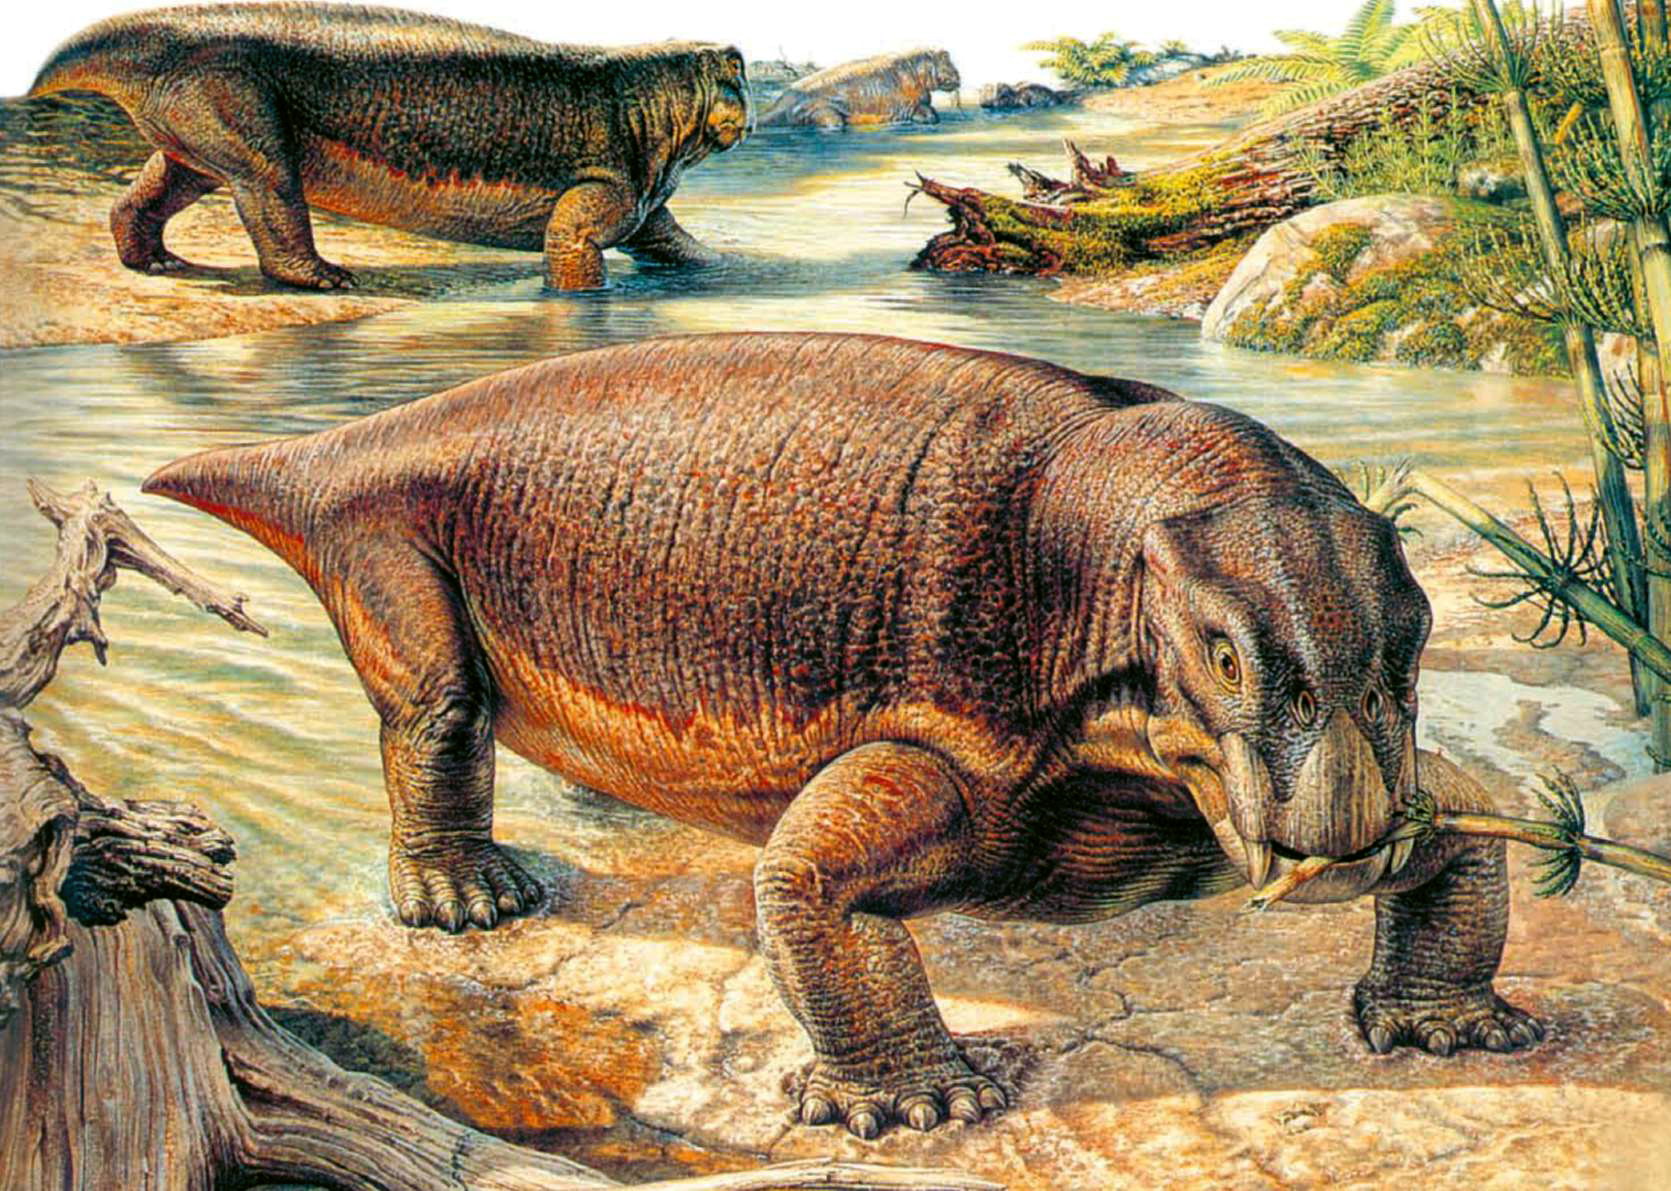 300 млн лет назад какая эра. Листрозавр Триасового периода. Триасовый период мезозойской эры. Терапсиды мезозойской эры. Терапсиды Триасового периода.